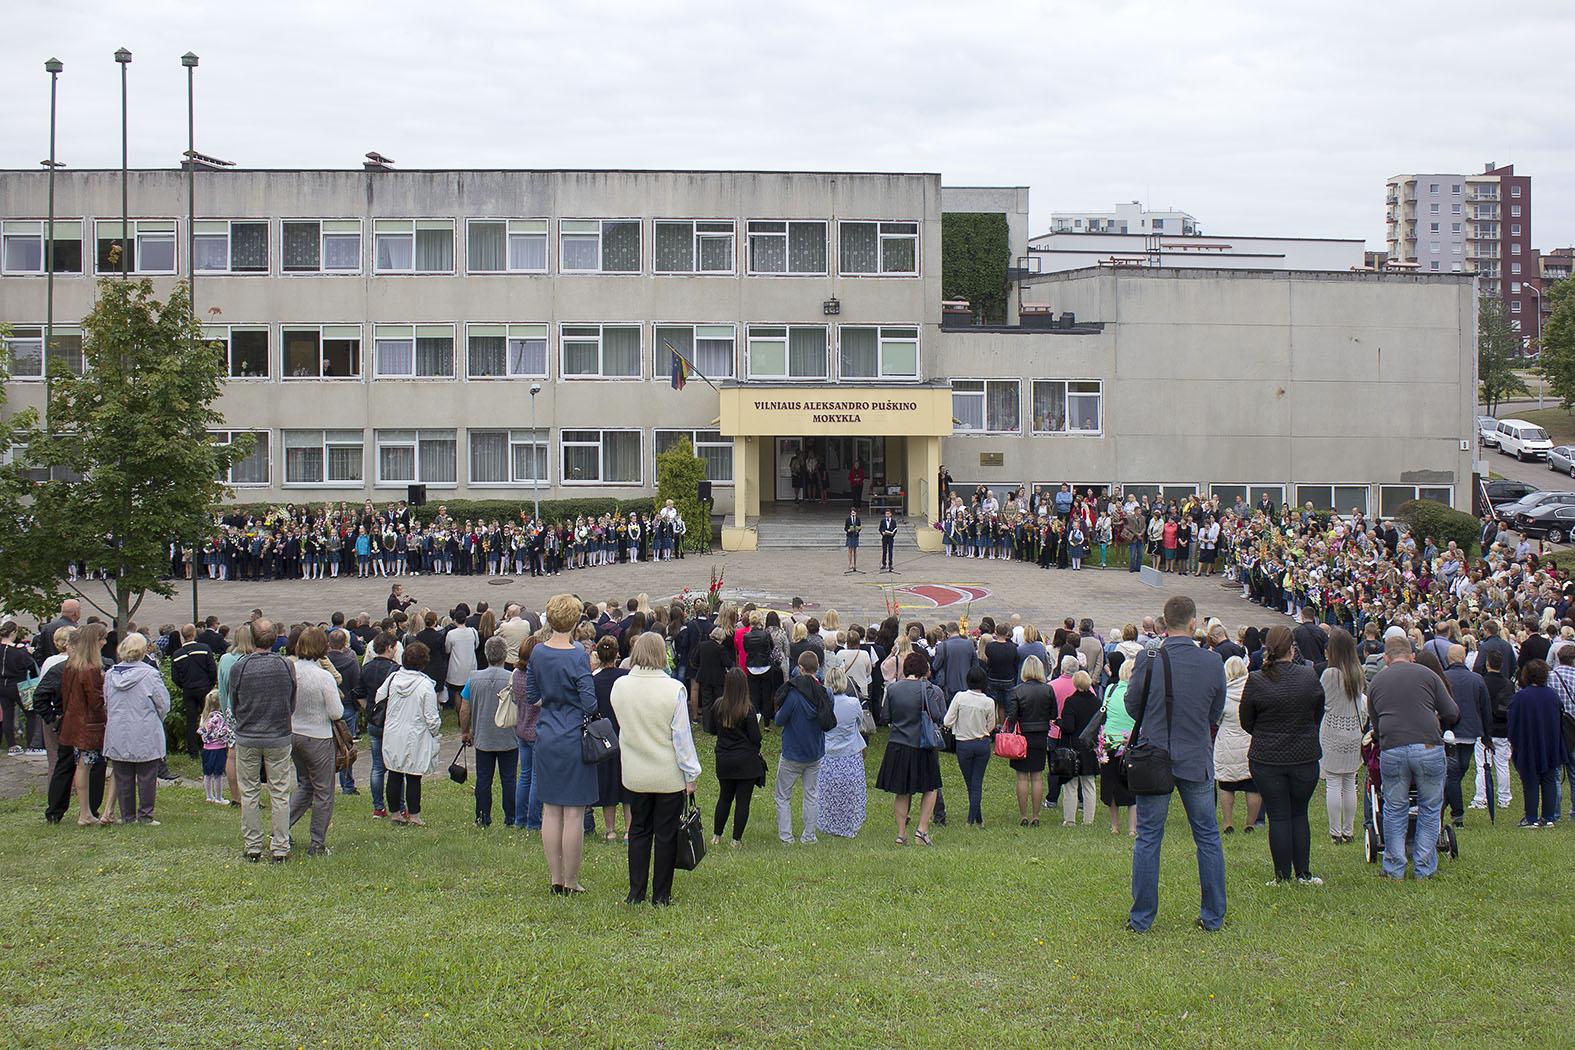 День рождения Пушкина в школьном лагере Вильнюсской СОШ номер 3 2022 год. День открытия школы Пушкина в 2014 году в Ереване 1 сентября.